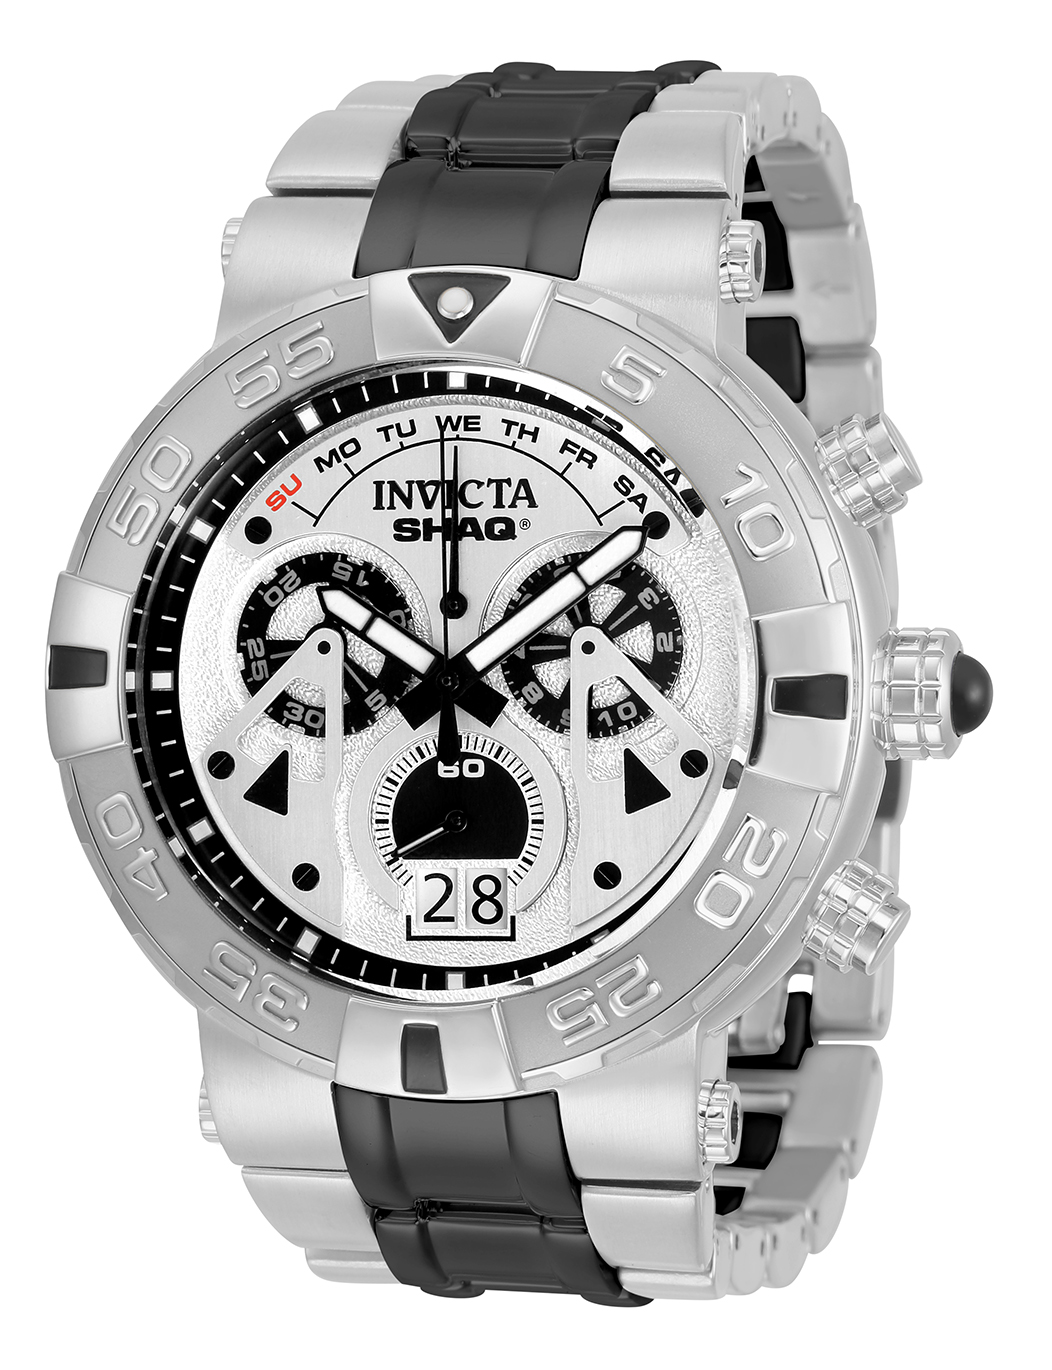 Invicta SHAQ Men's Watch - 52mm, Steel, Black (33782)